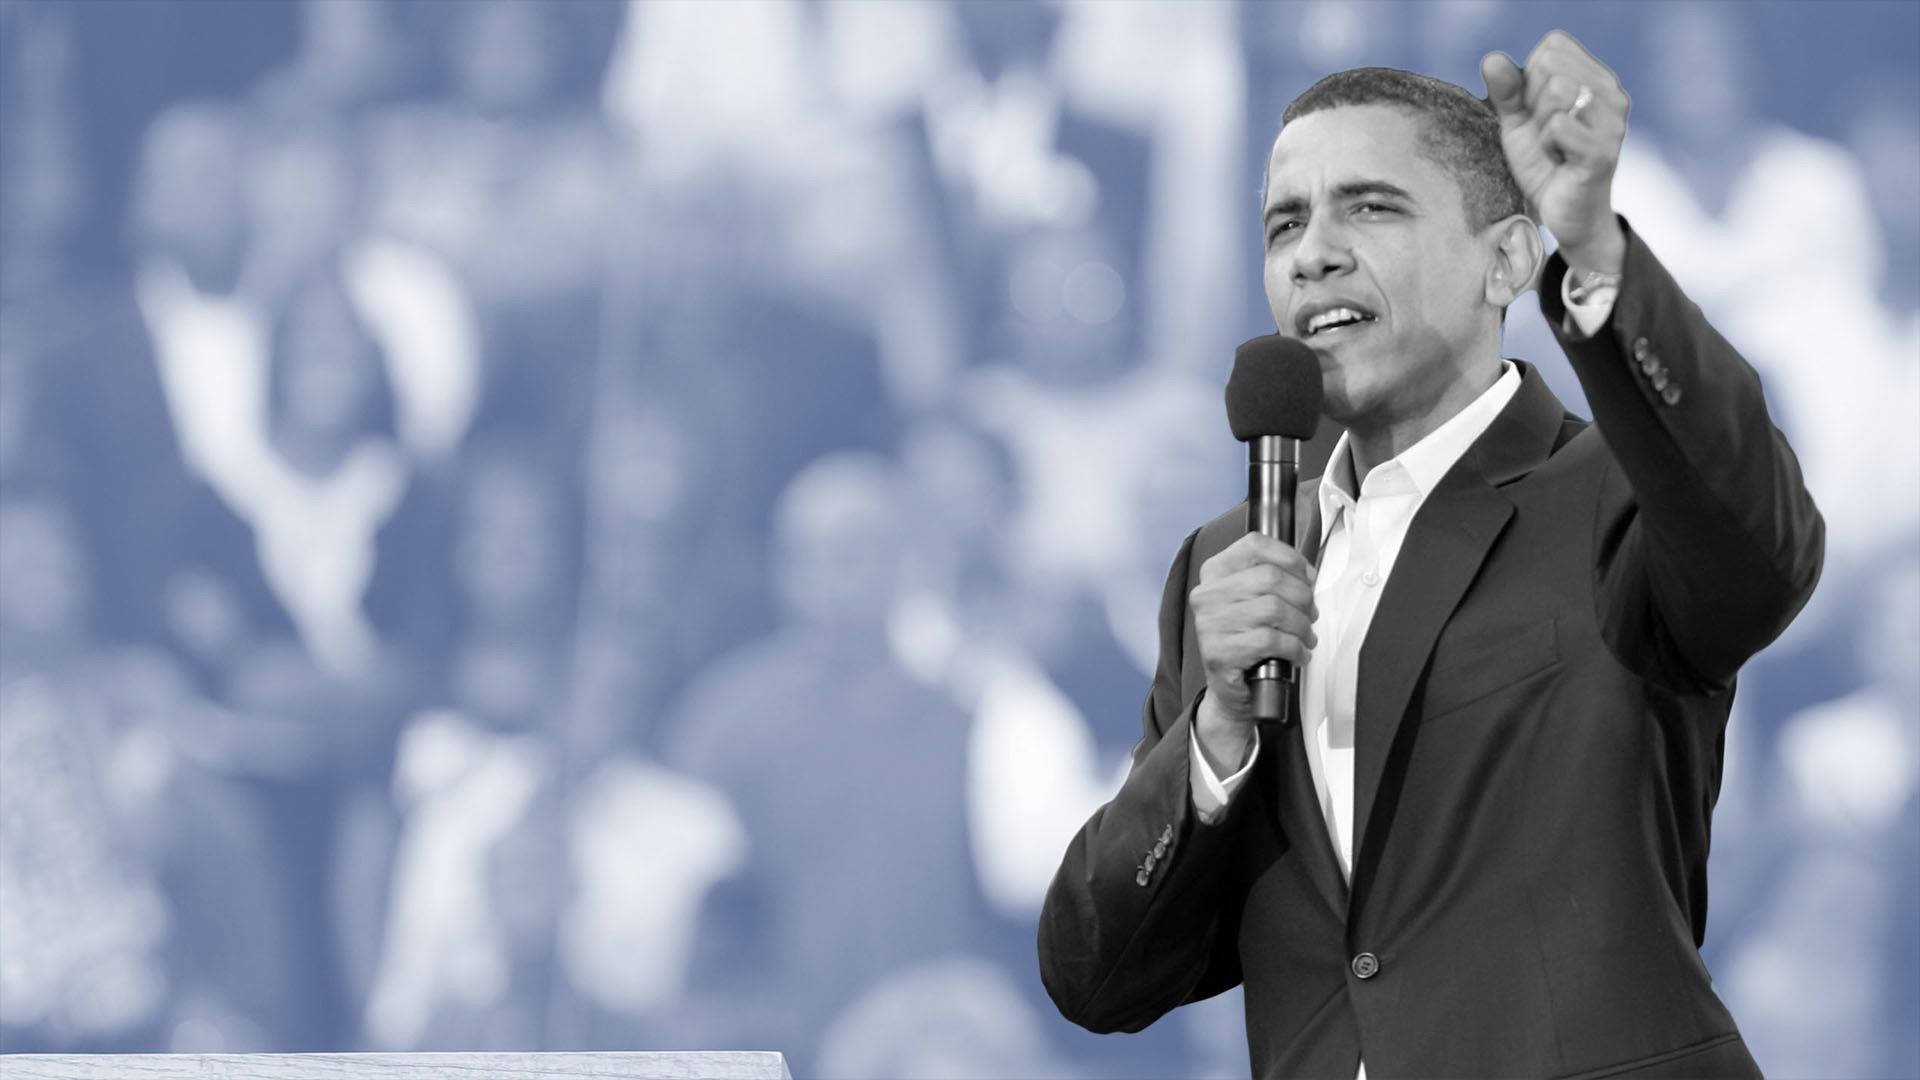 Greyscale Barack Obama Delivering Speech Background